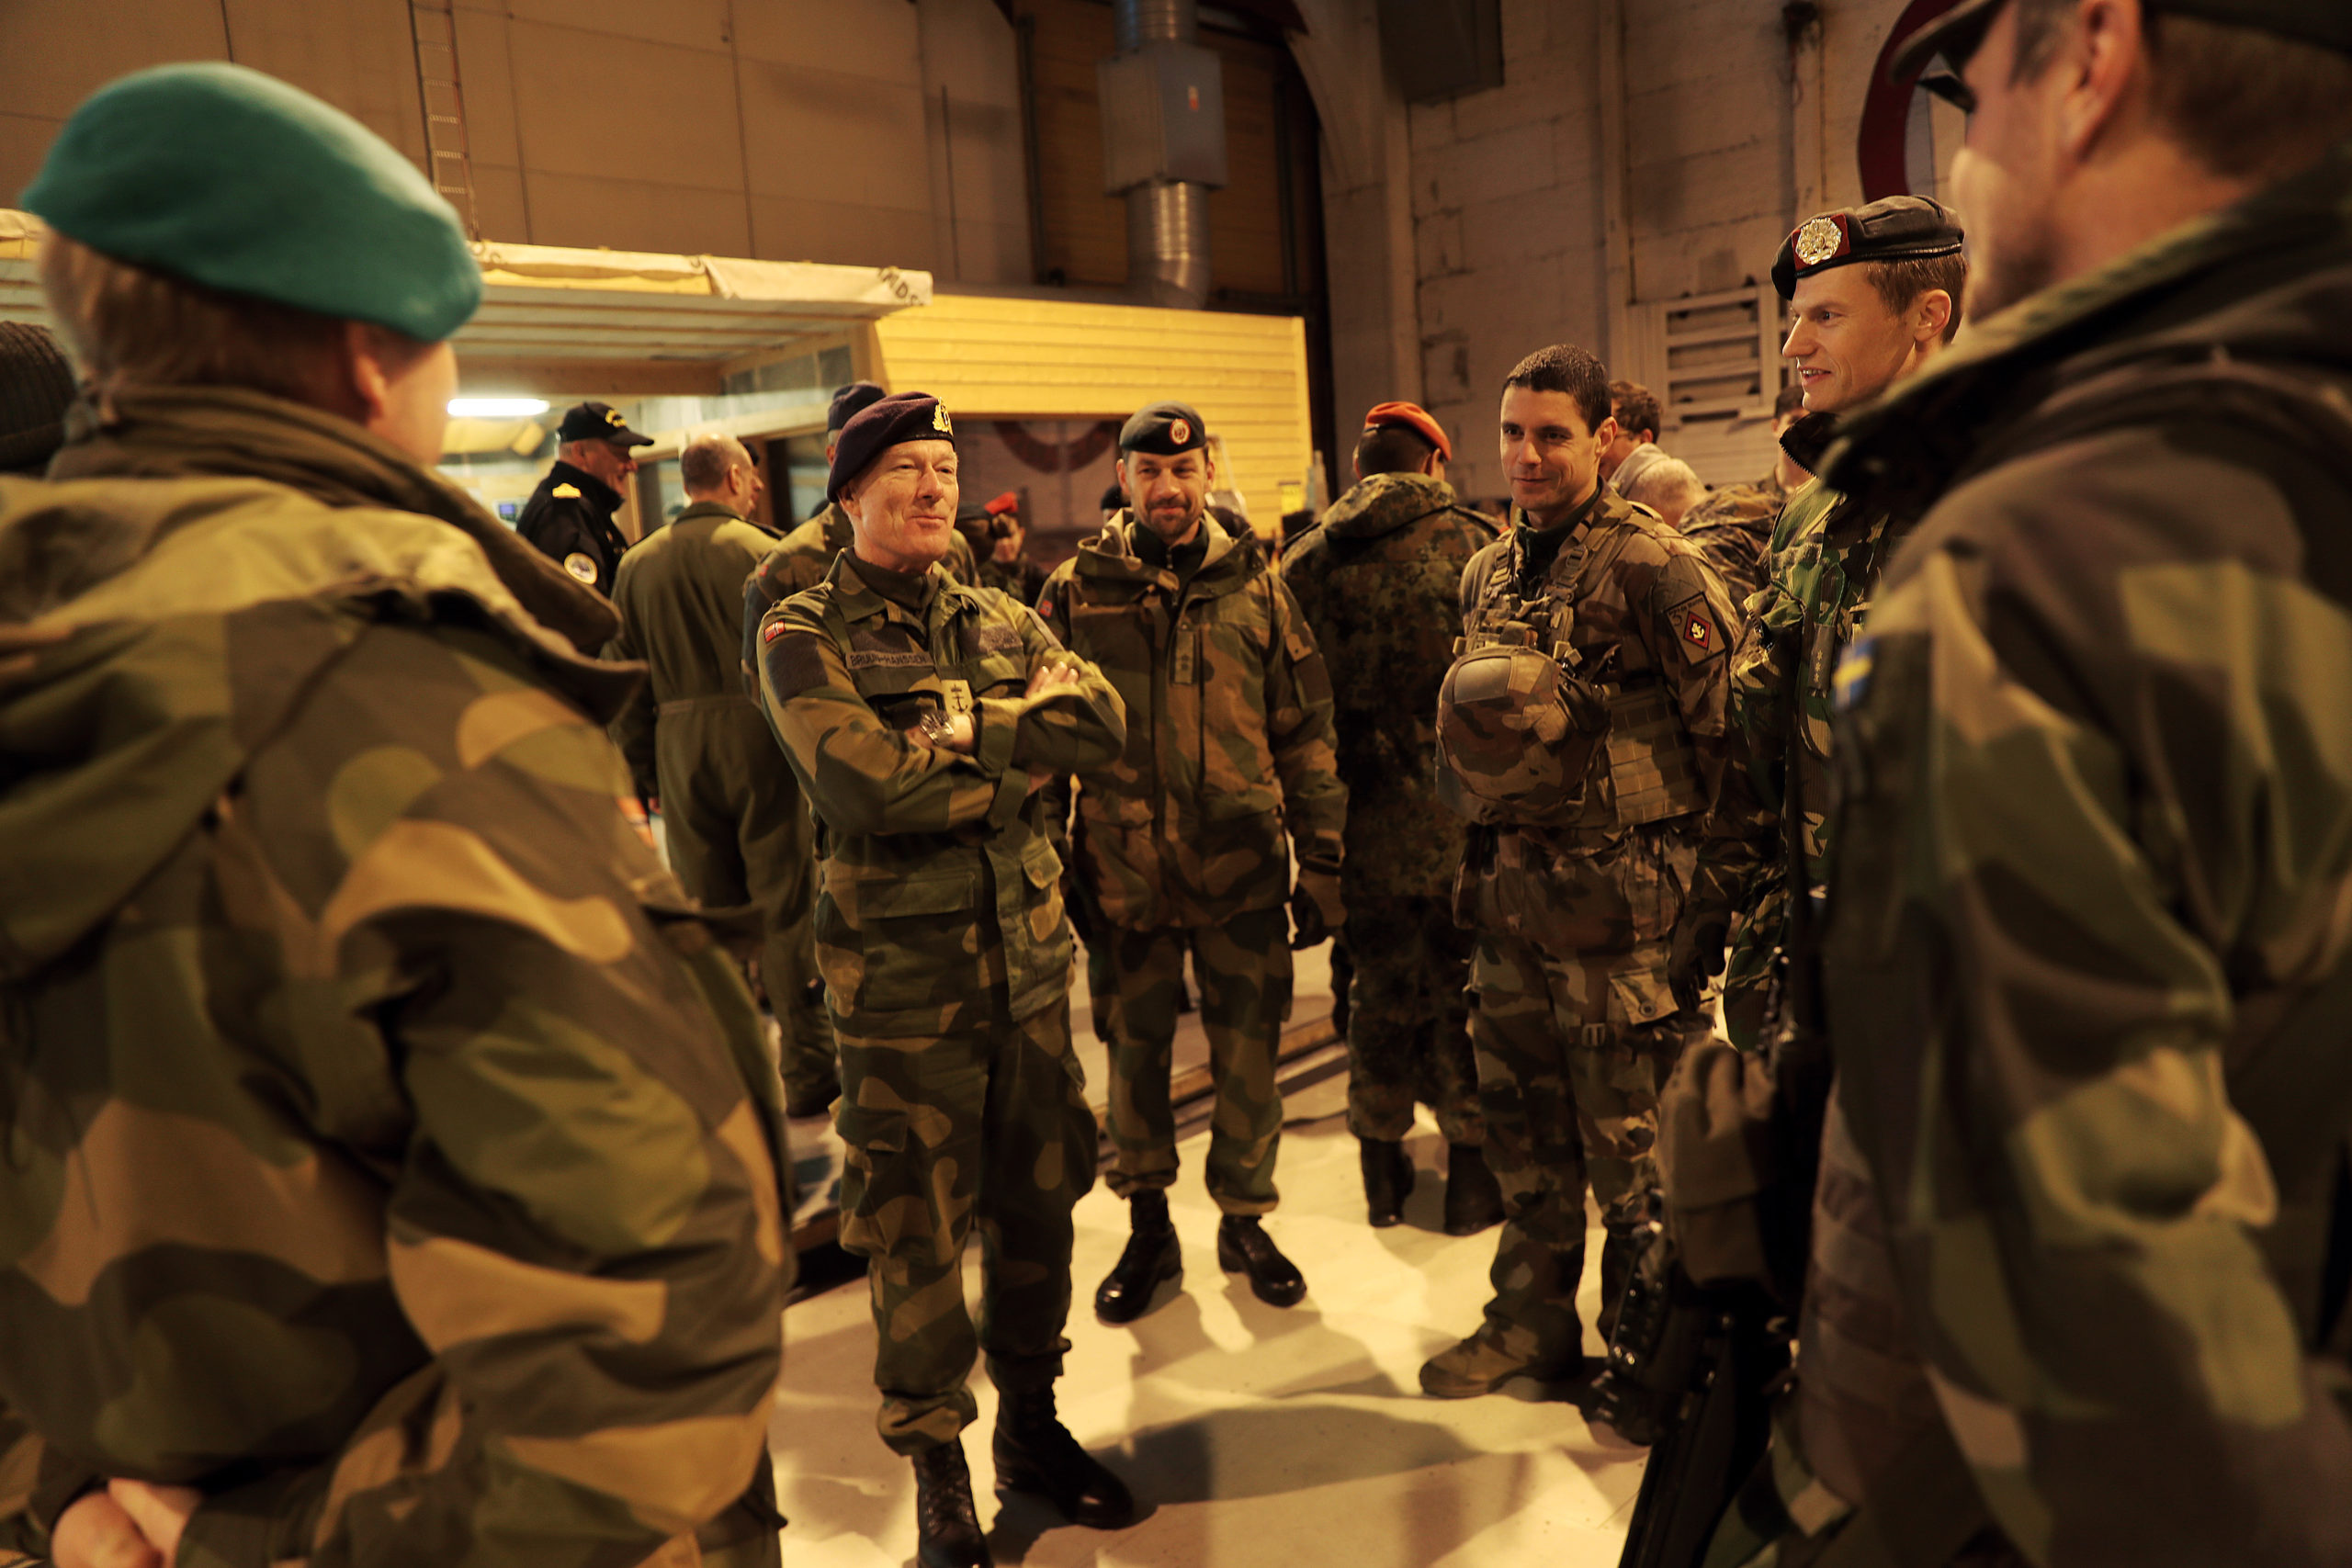 Mennesker kledd i militæruniform står i ring og snakker sammen.